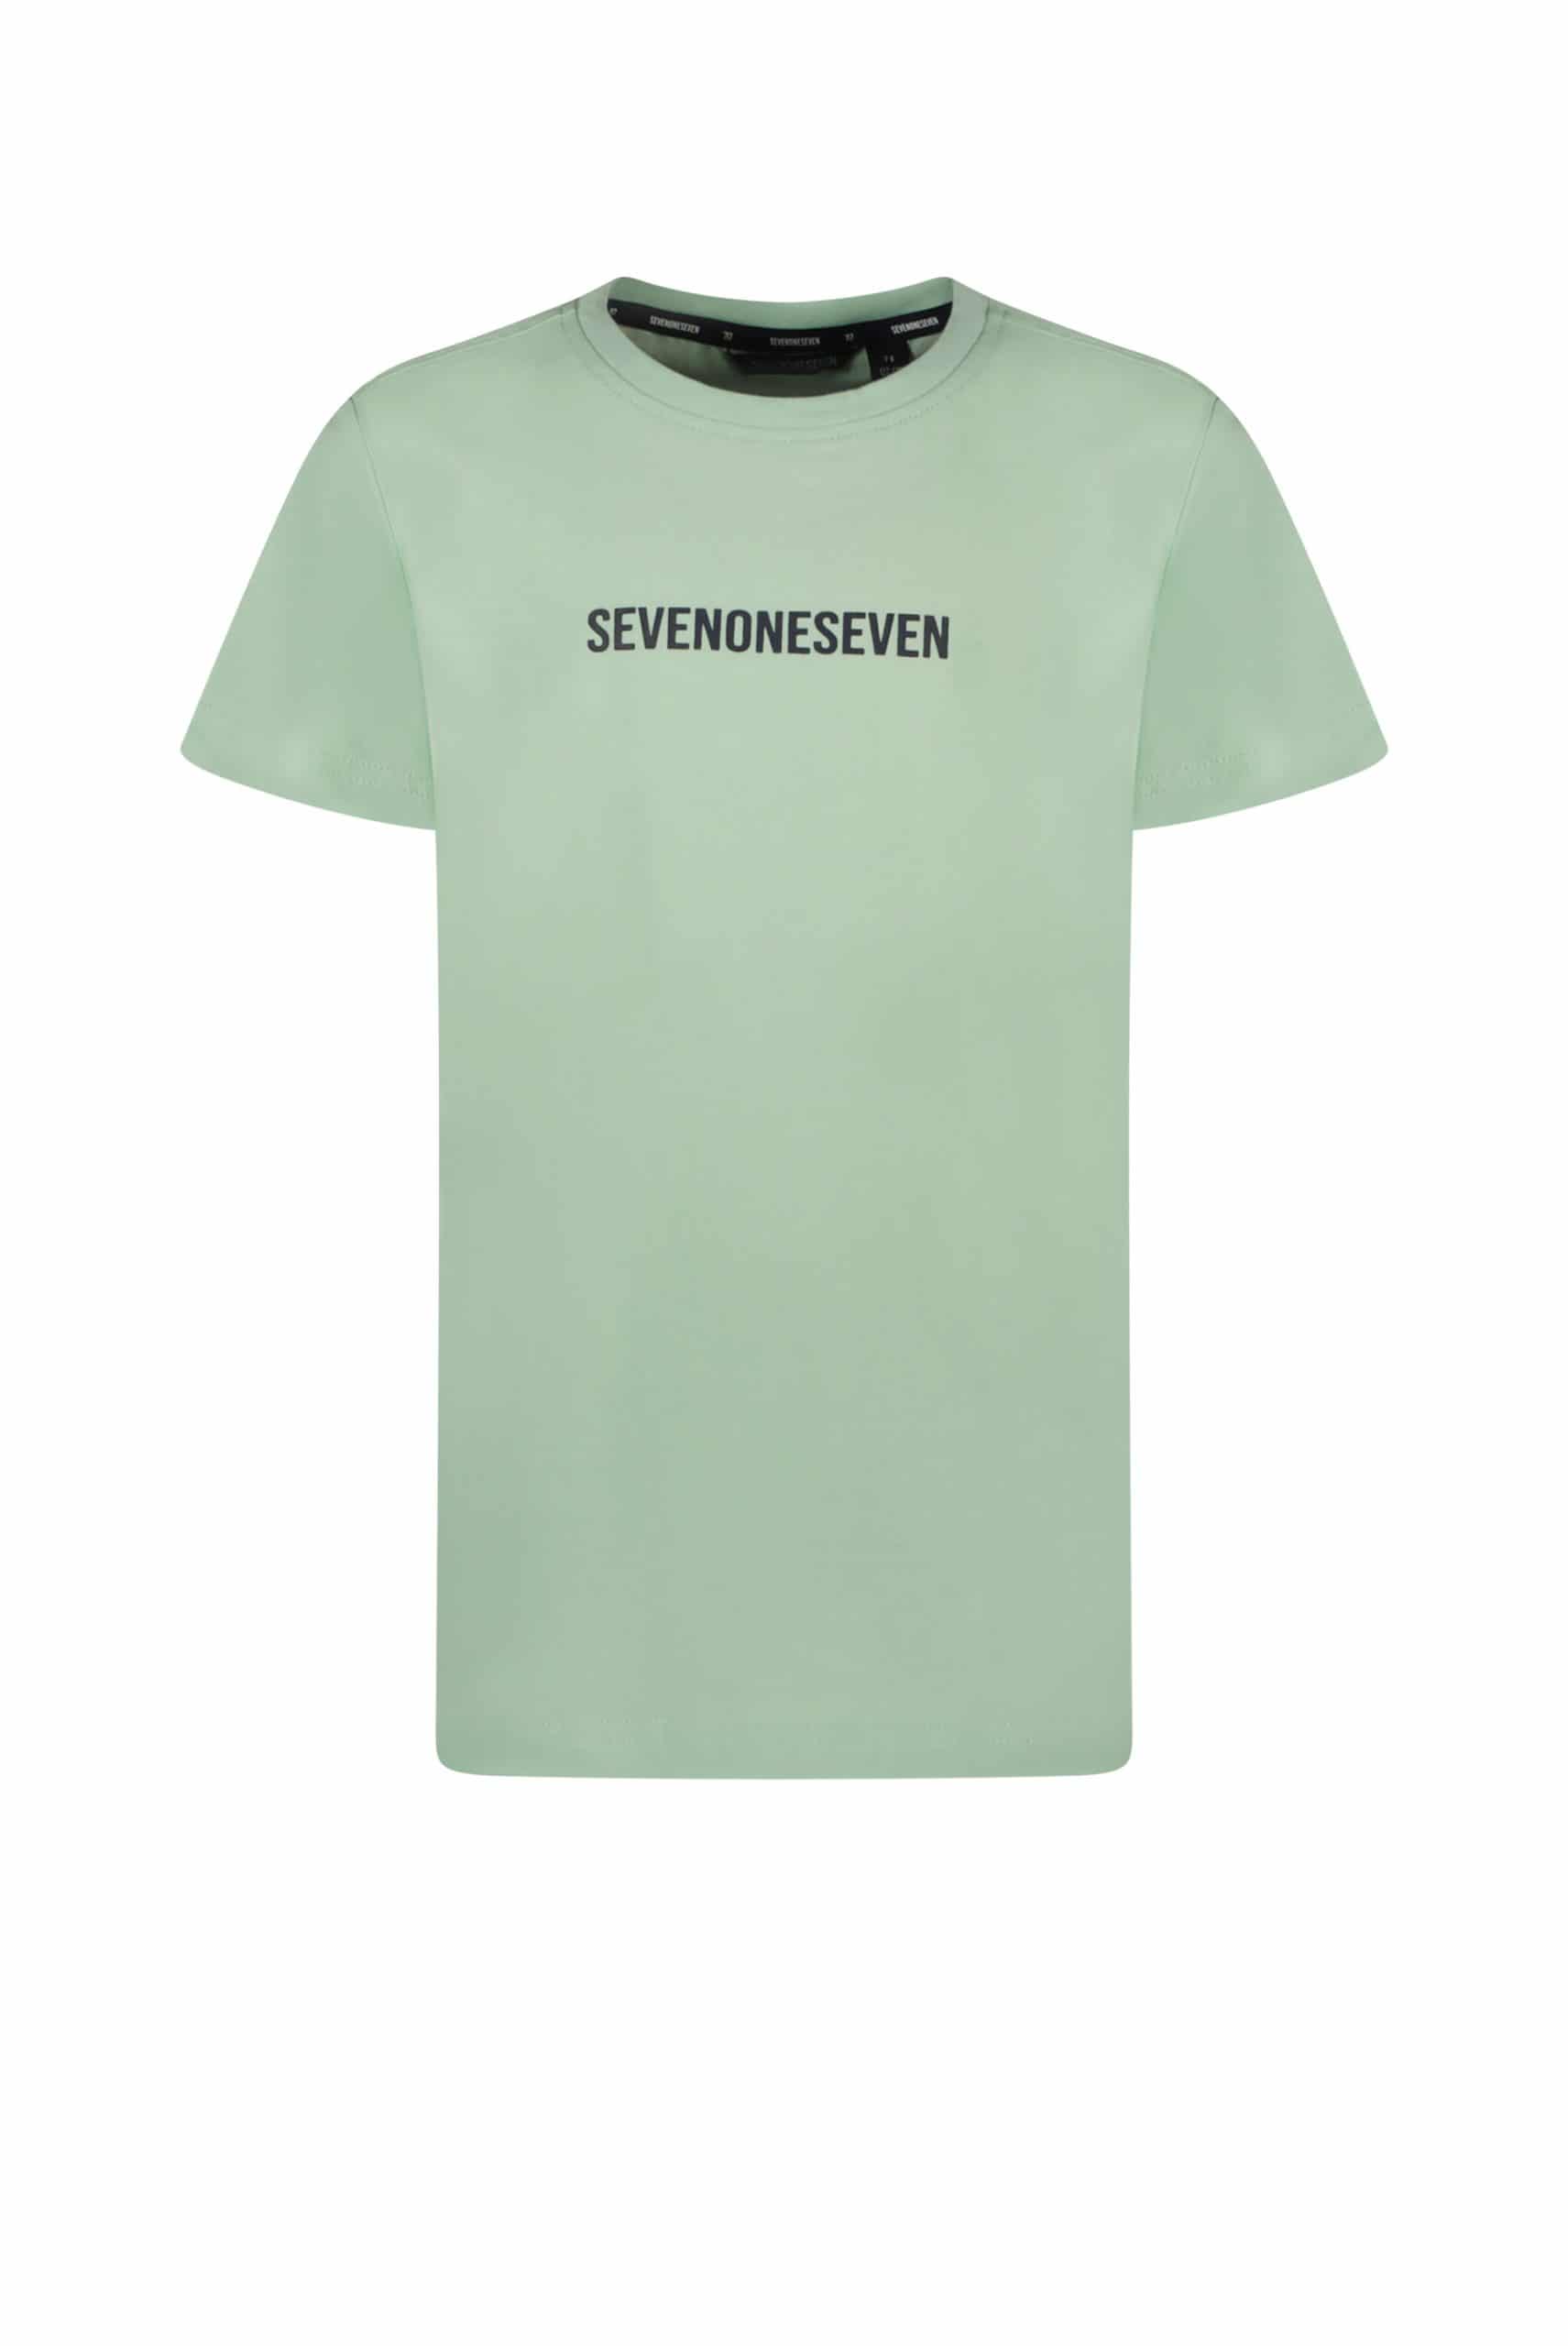 sevenoneseven T-shirt pistache